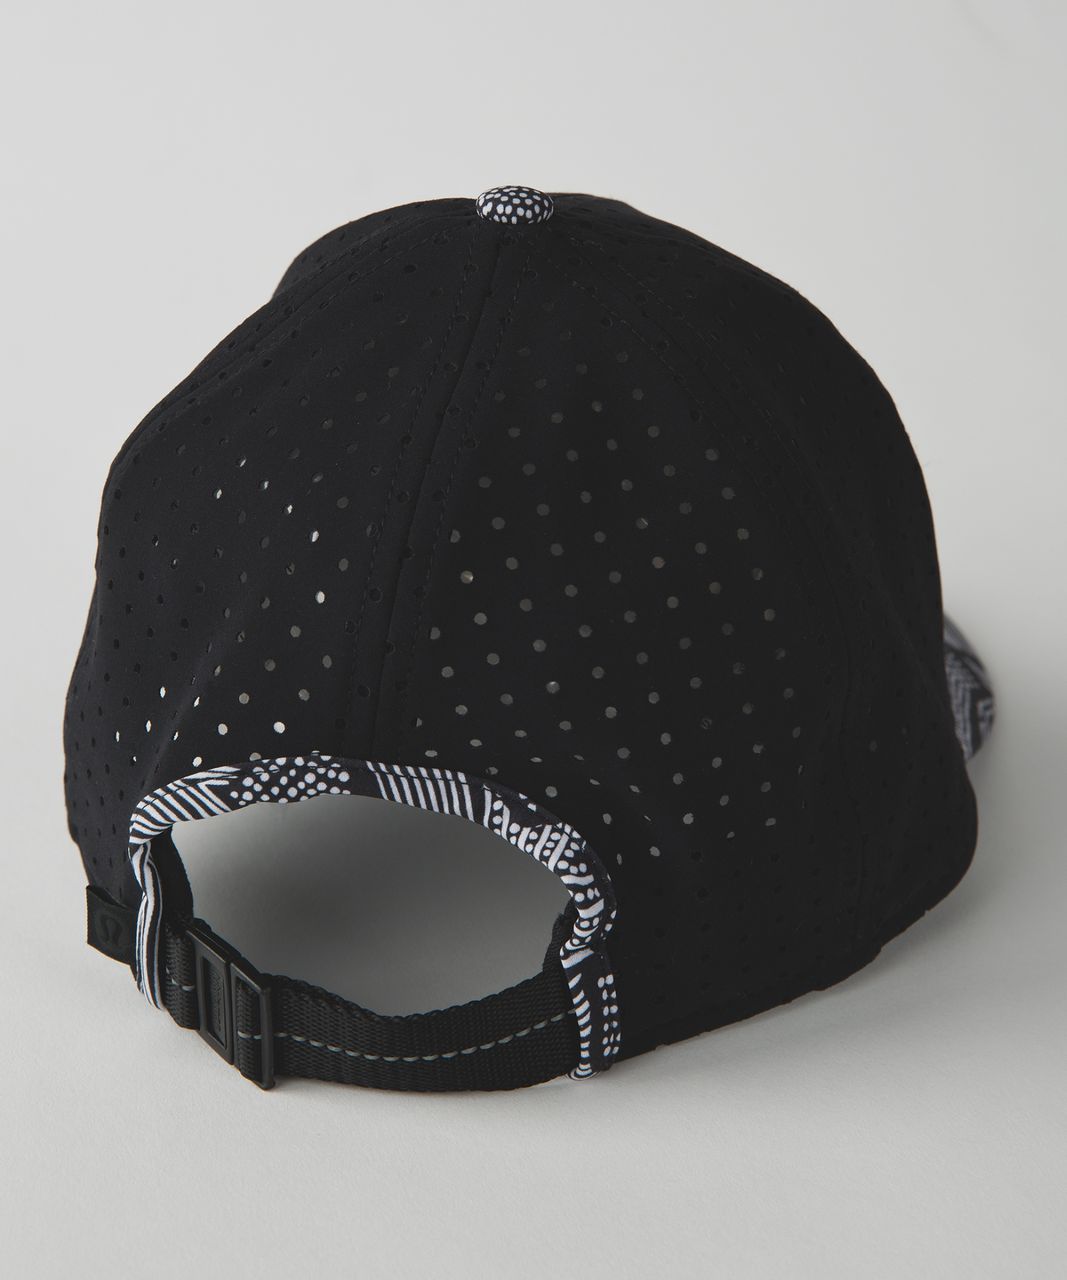 Lululemon Baller Hat (Perforated) - Black / Dottie Tribe White Black